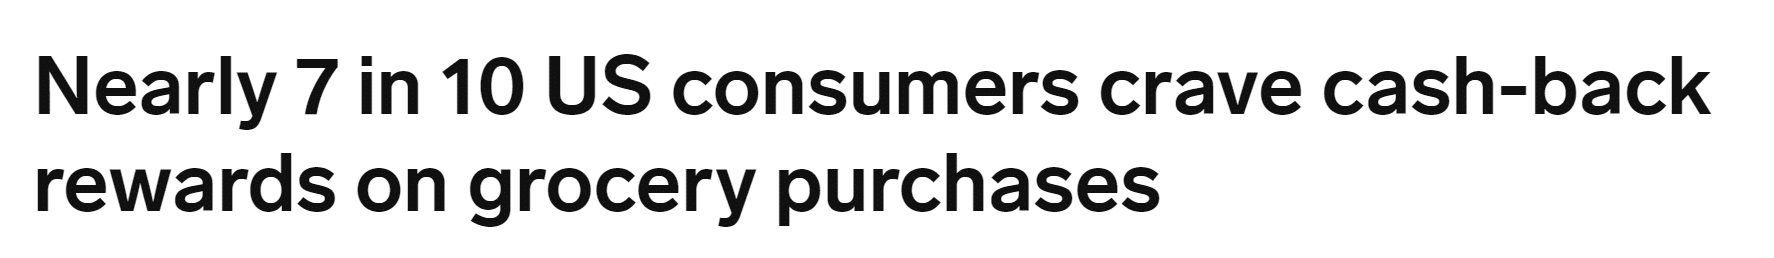 US Consumers